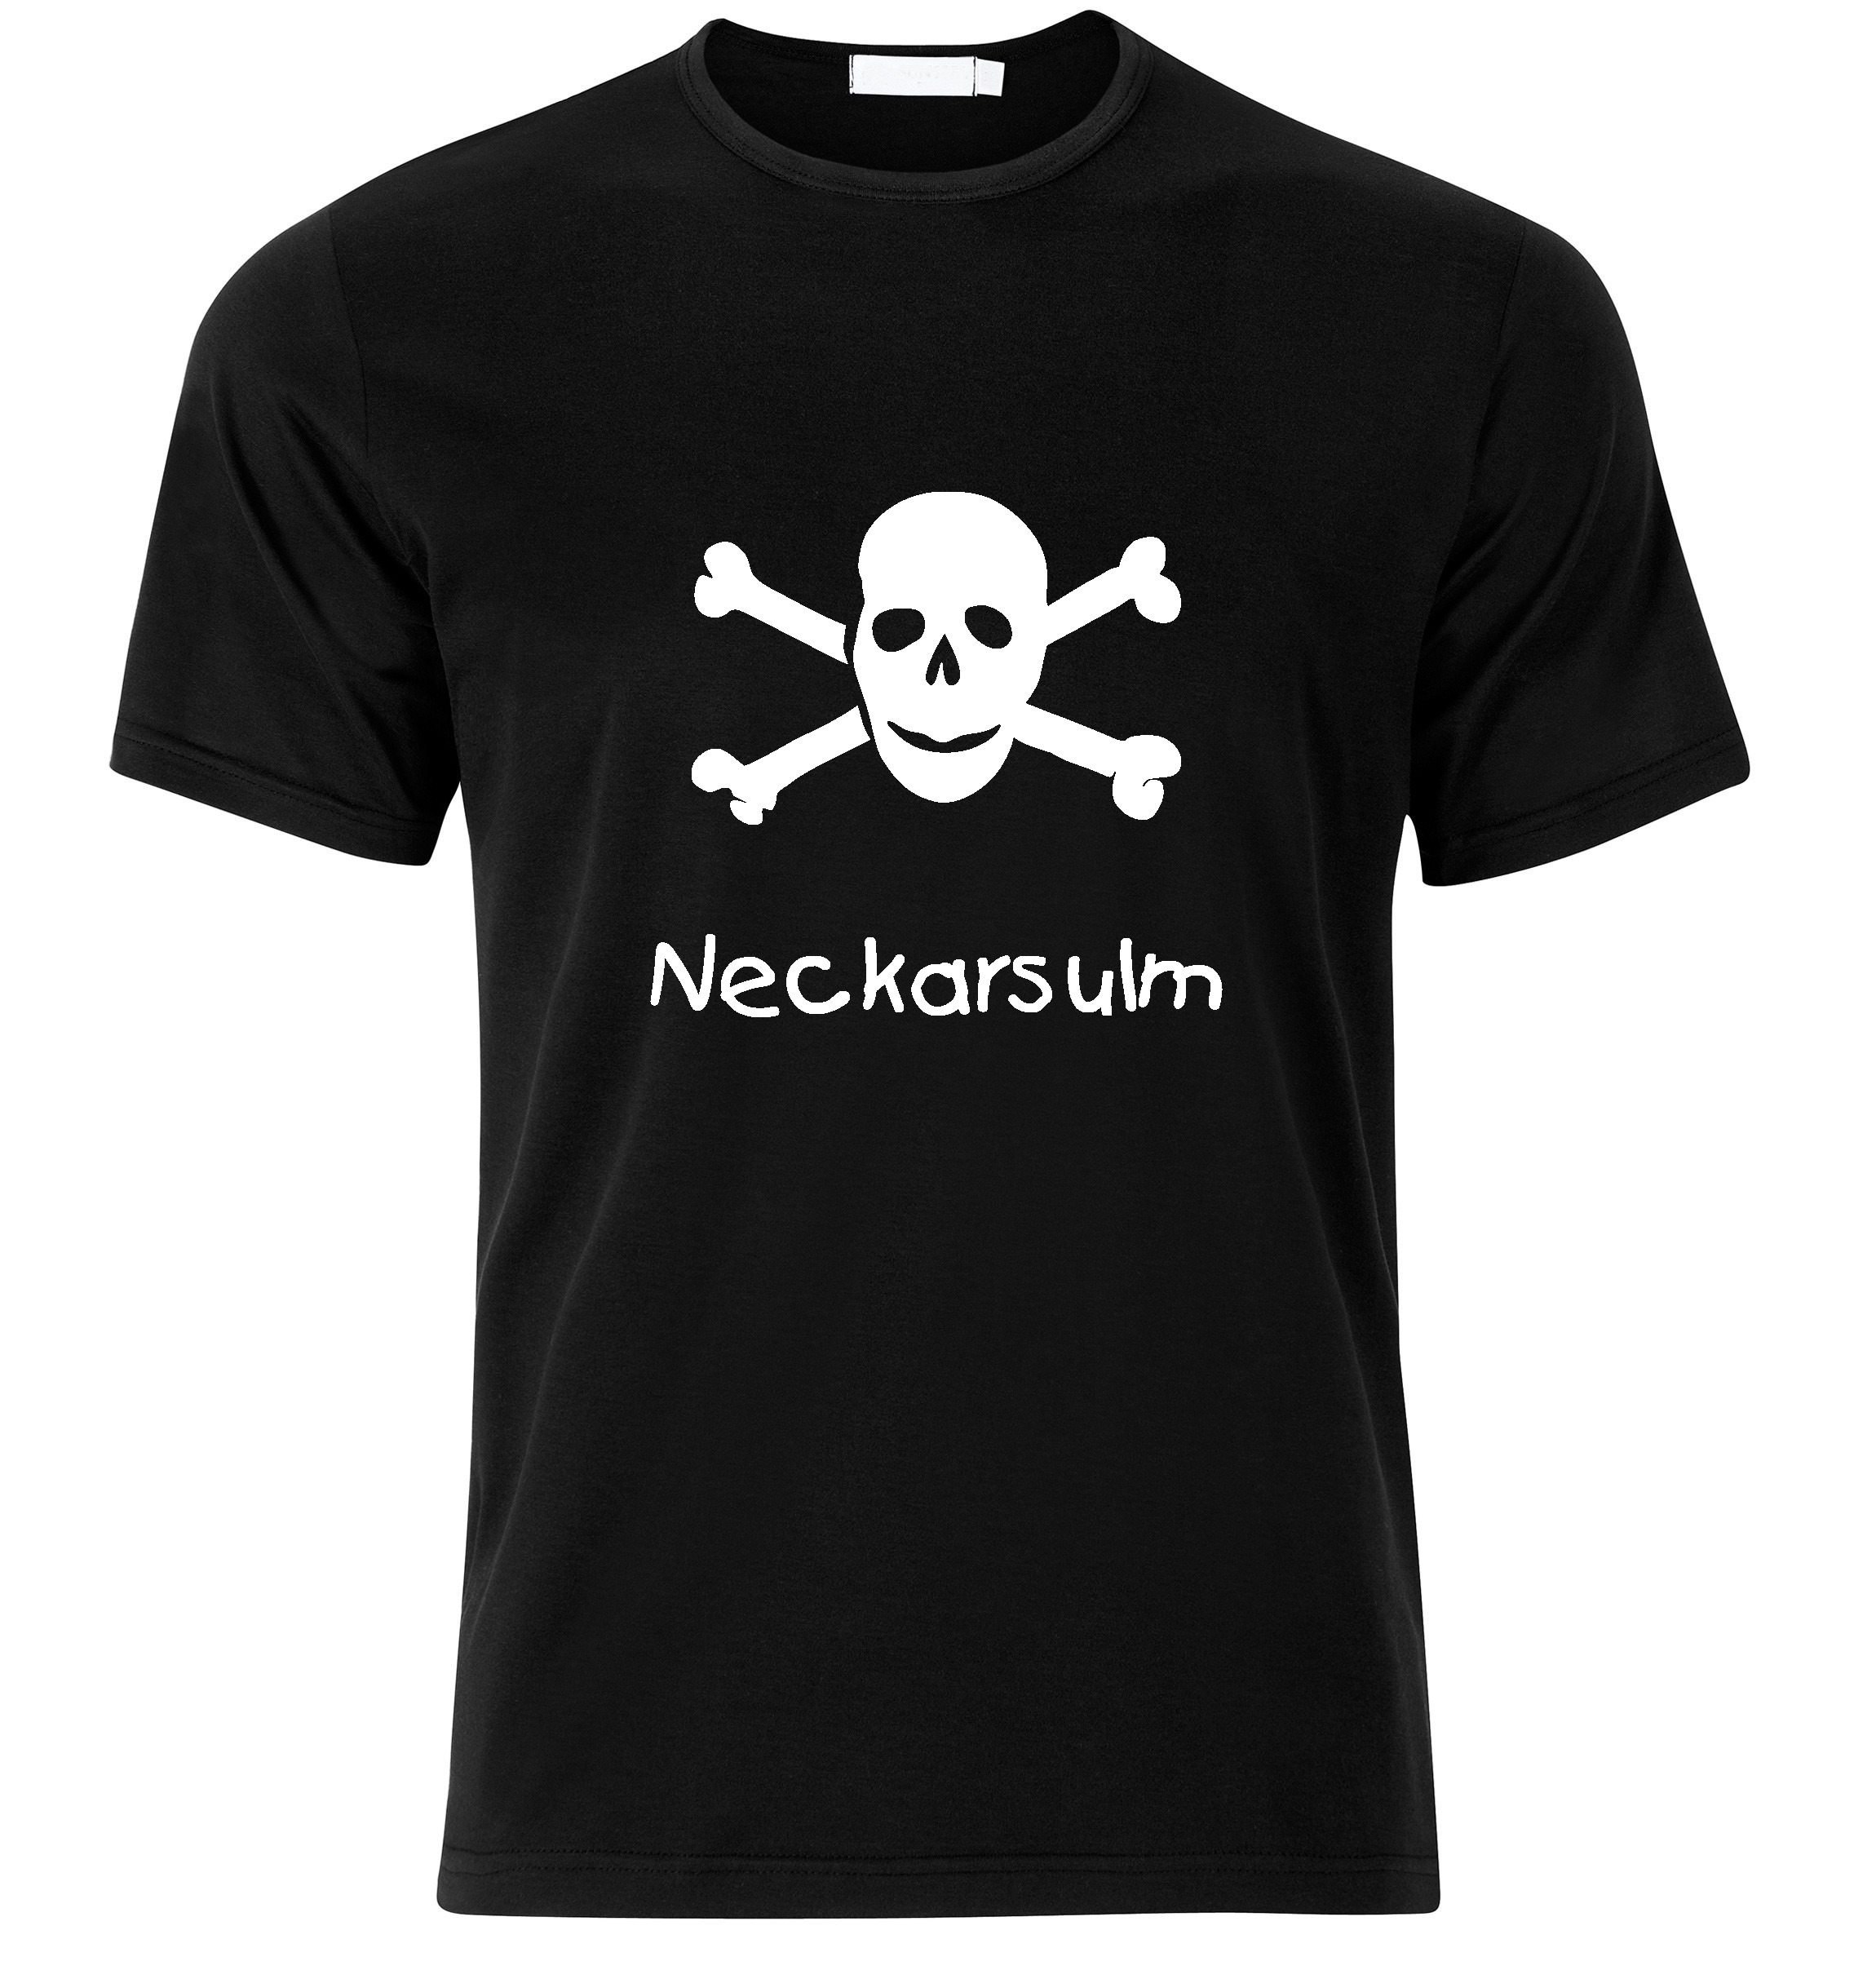 T-Shirt Neckarsulm Jolly Roger, Totenkopf